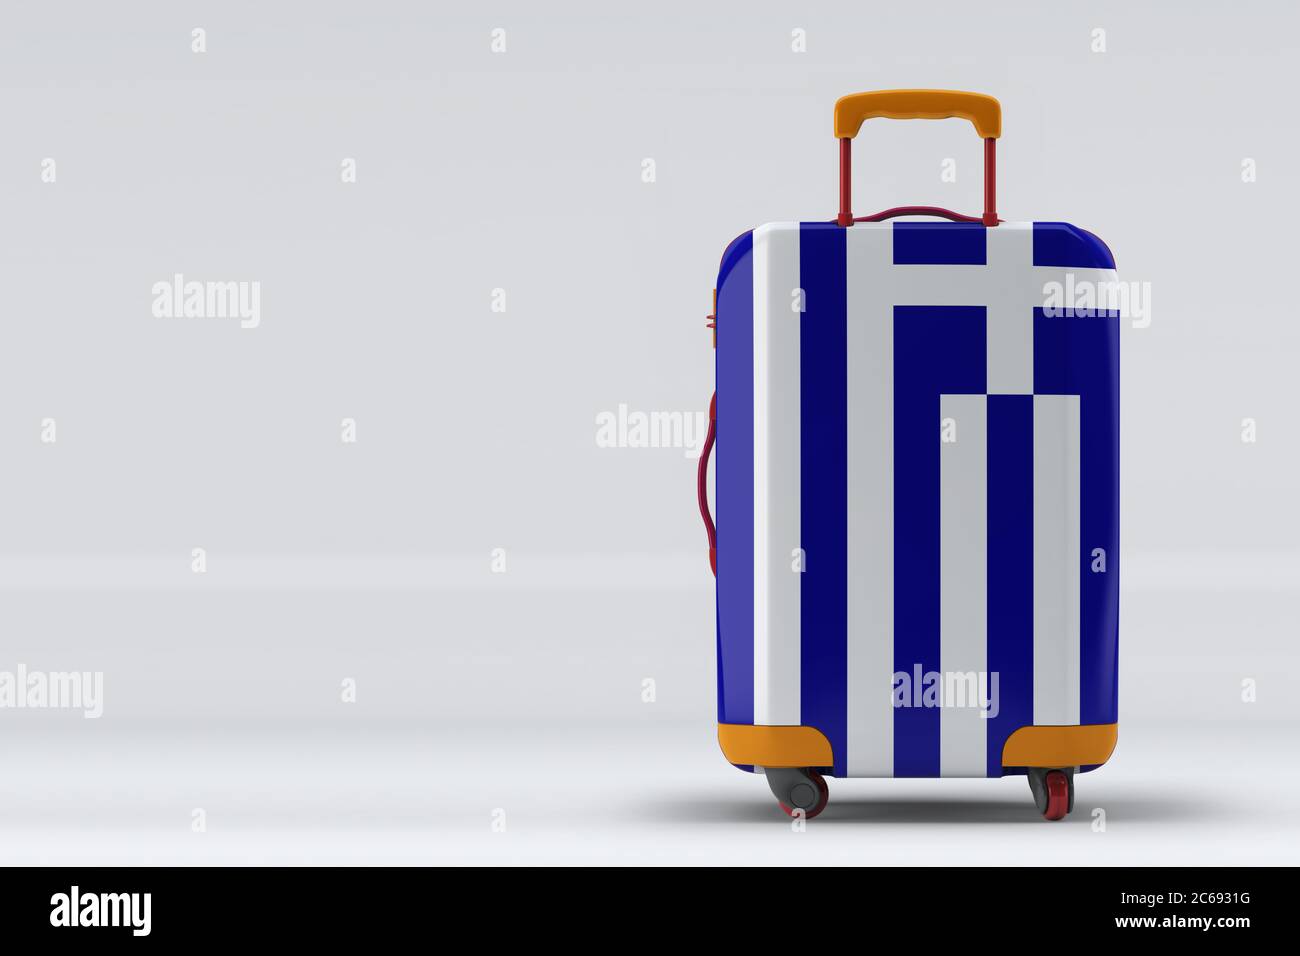 Griechenland Flagge auf einem stilvollen Koffer Rückansicht auf farbigem Hintergrund. Leerzeichen für Text. Internationales Reise- und Tourismuskonzept. 3D-Rendering. Stockfoto